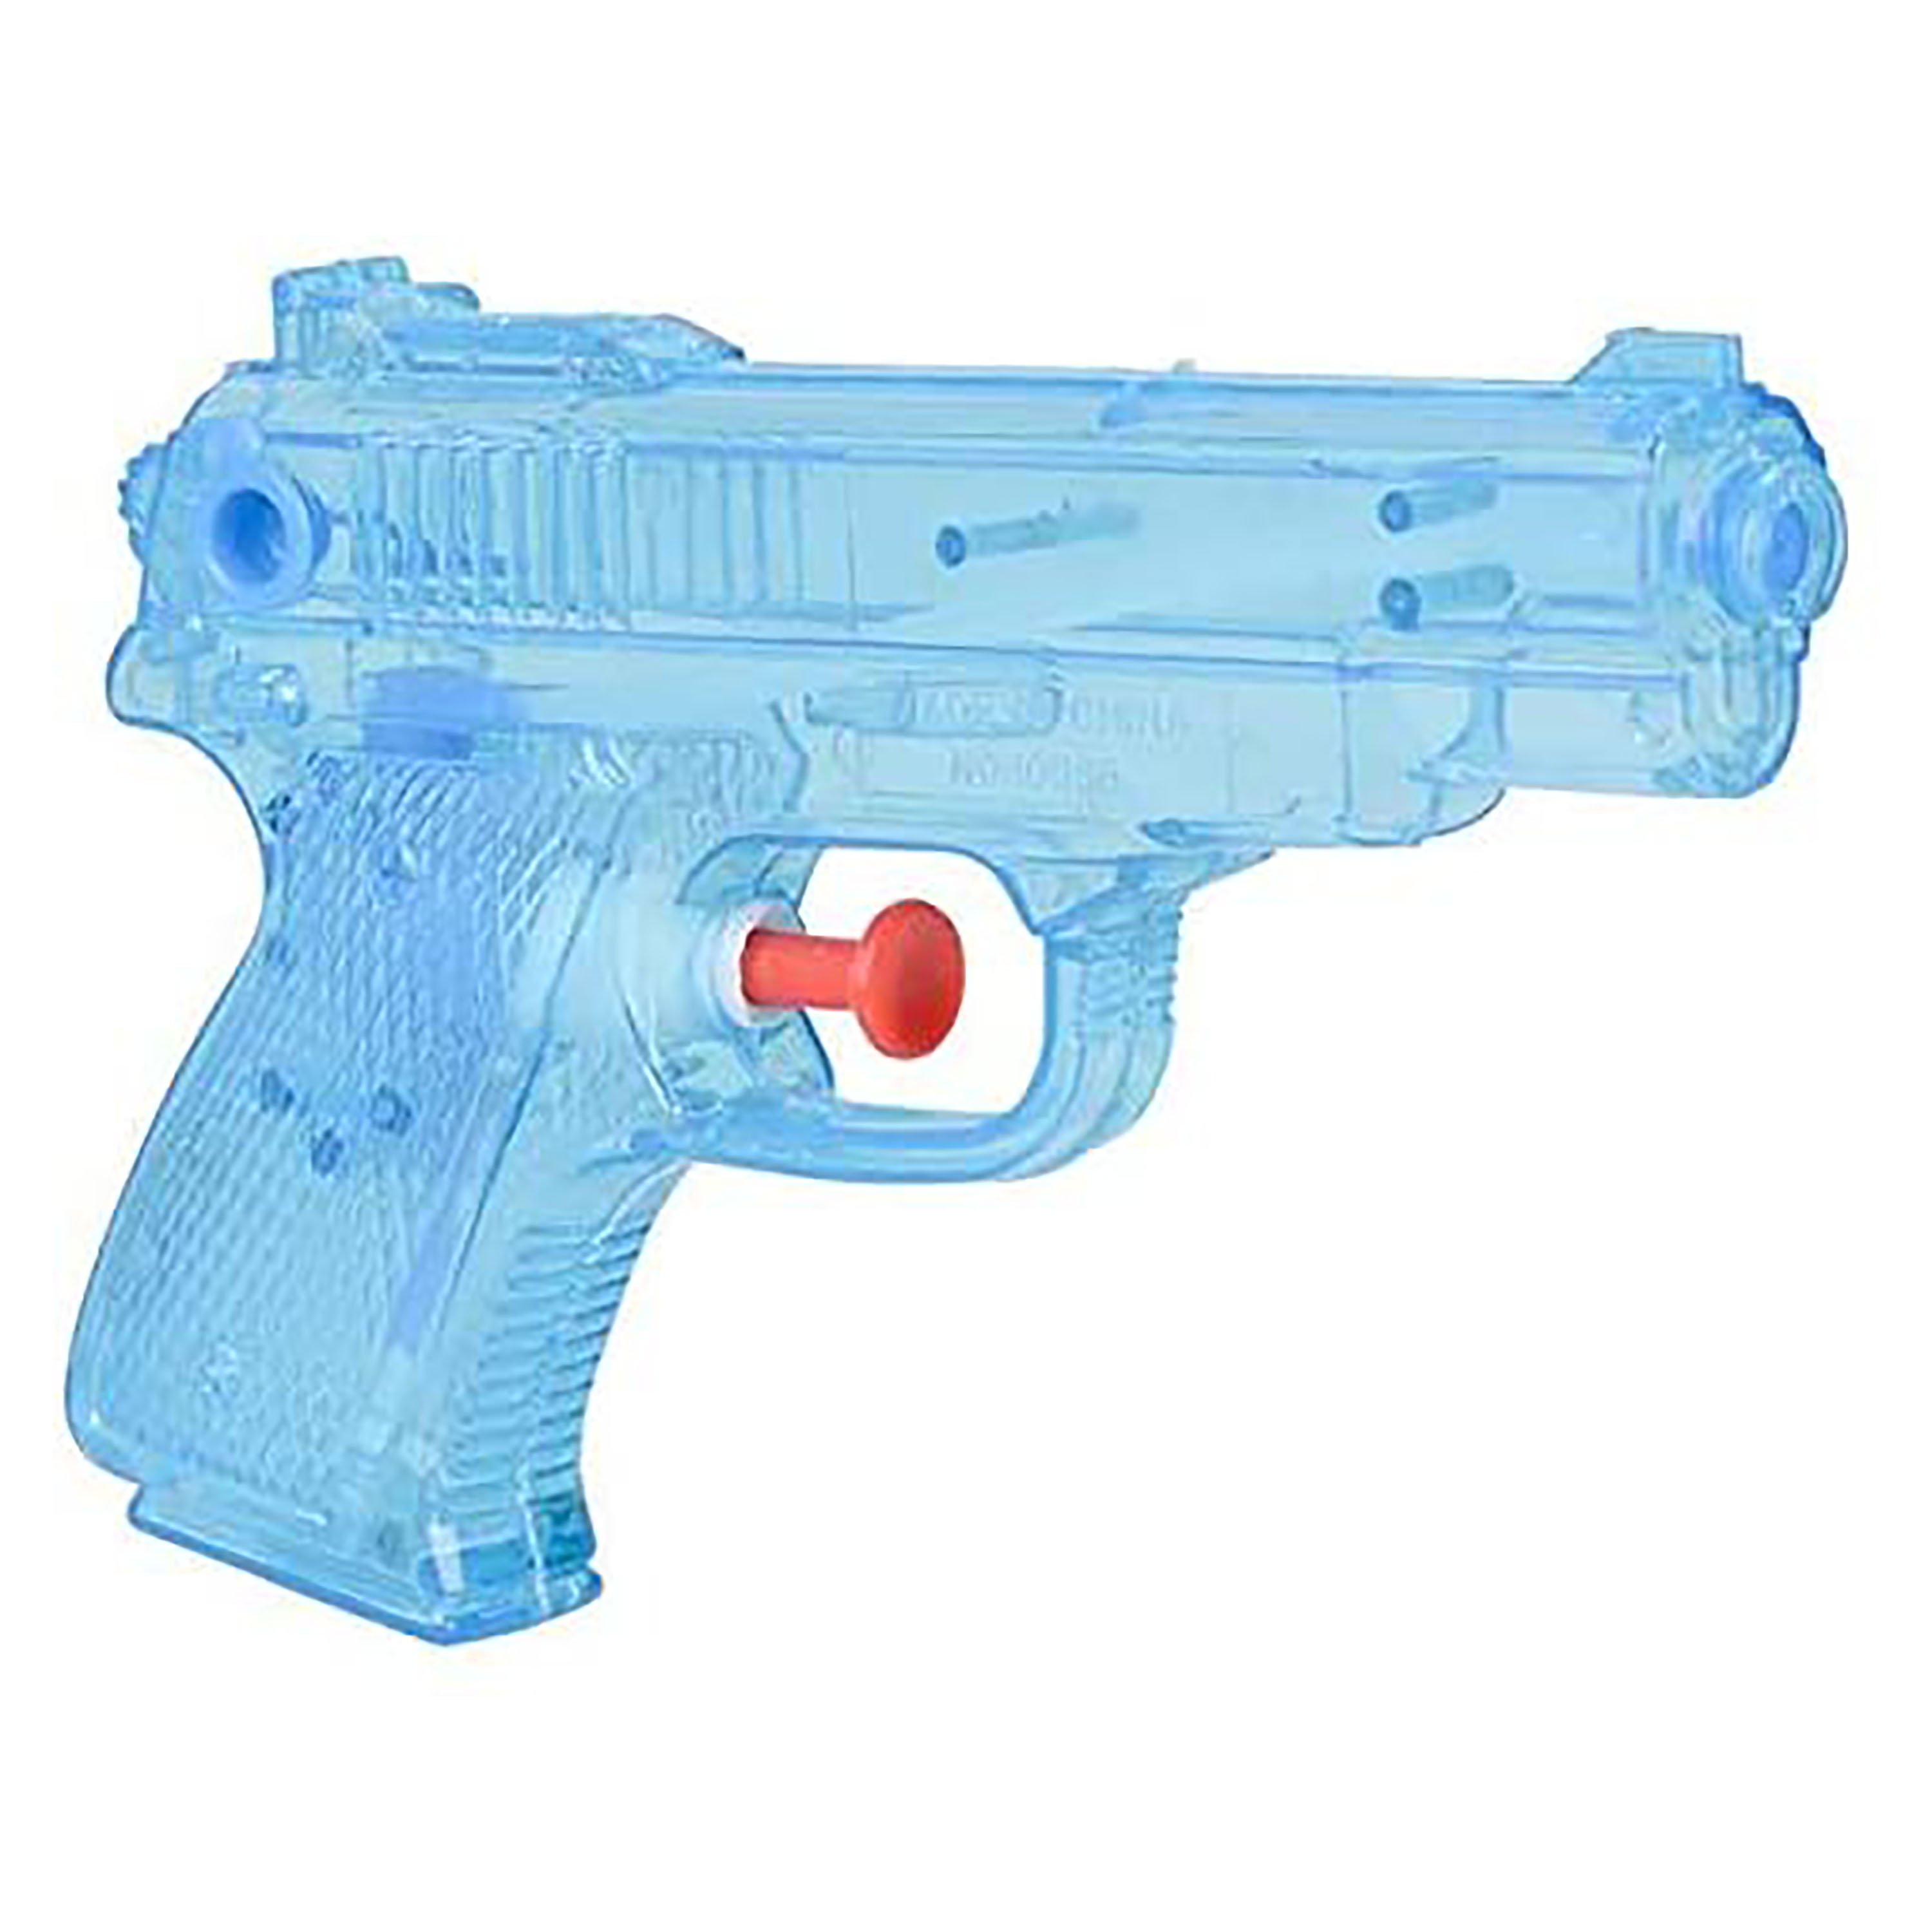 Comprar Pistola De Agua Azul